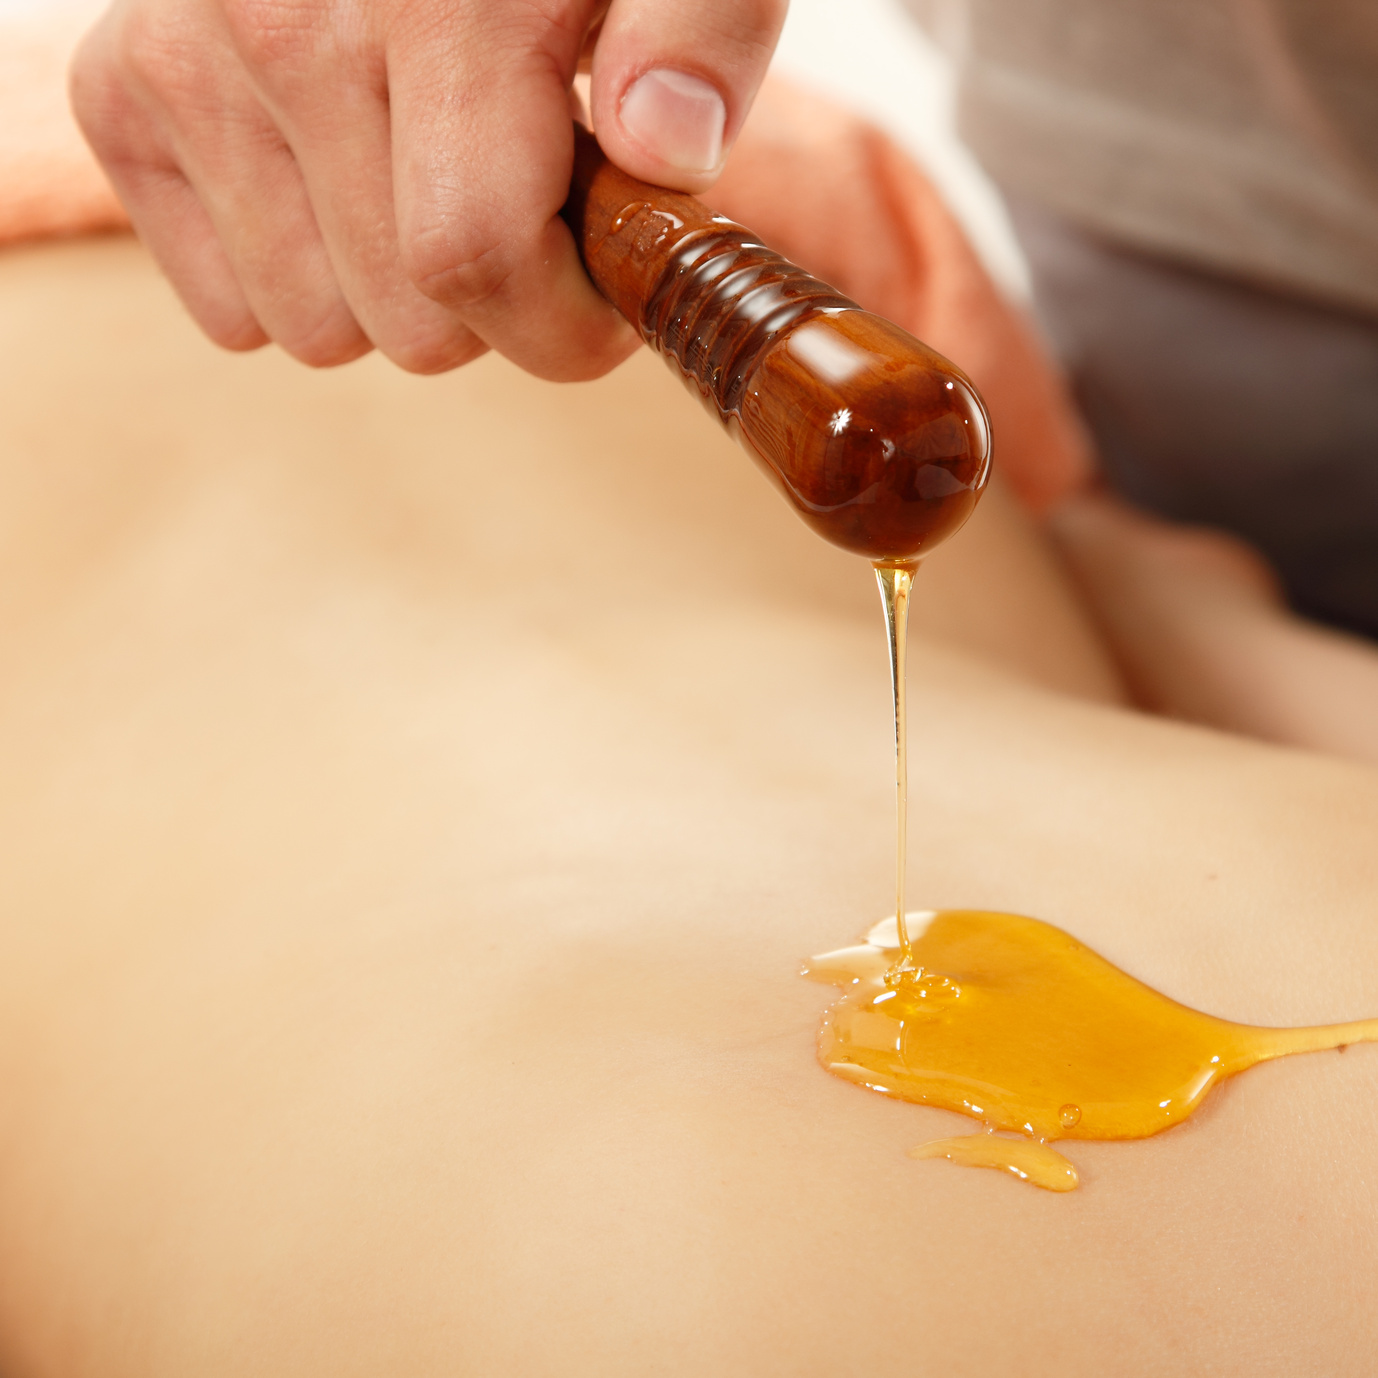 Le massage au miel, douceur externe et détente interne